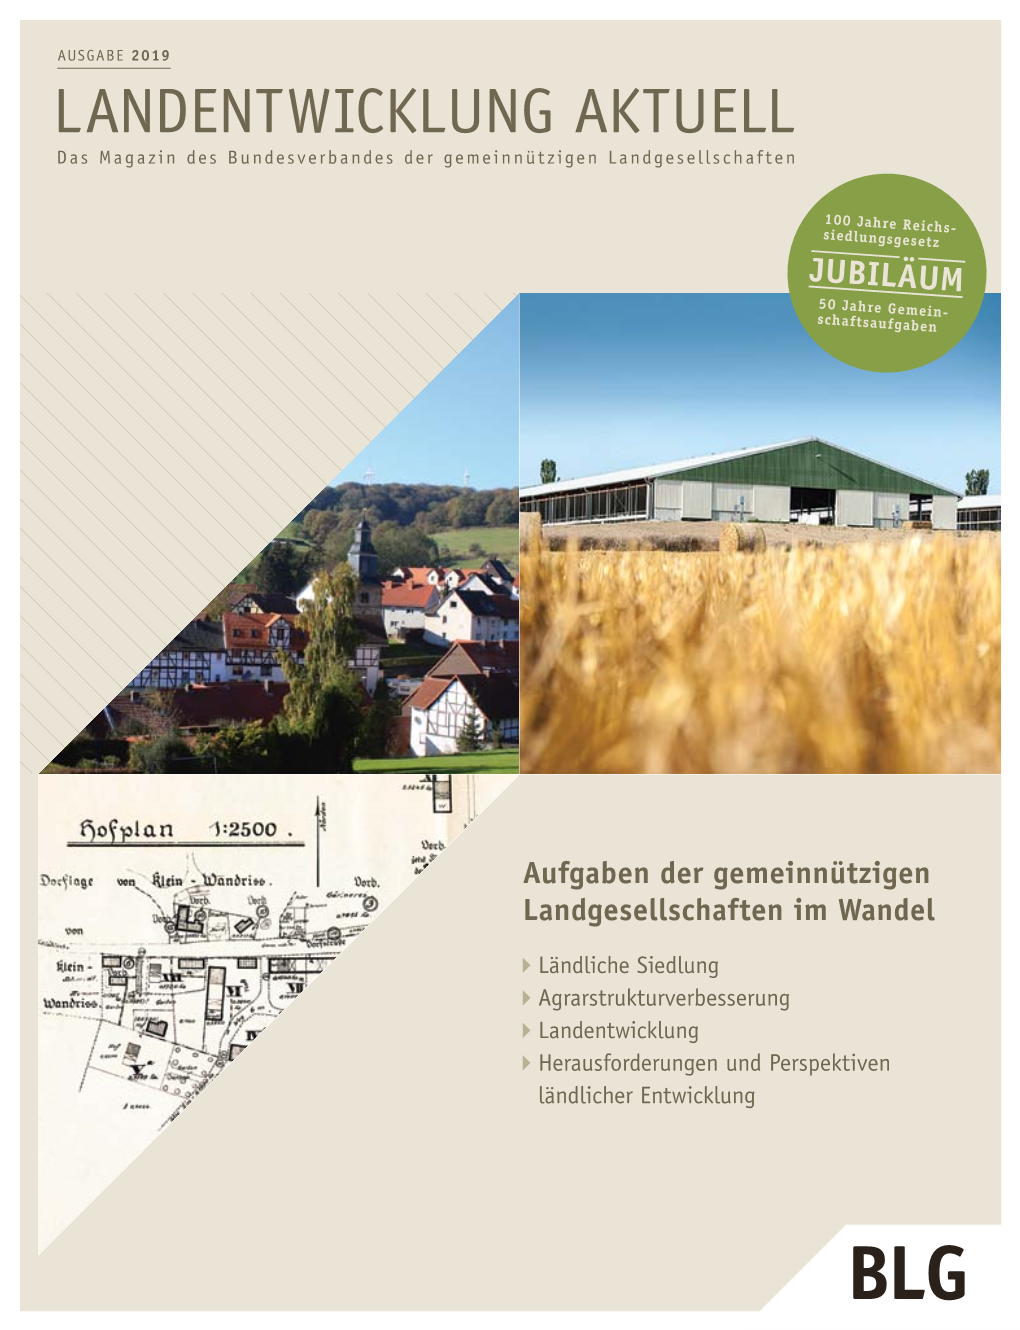 LANDENTWICKLUNG AKTUELL Das Magazin Des Bundesverbandes Der Gemeinnützigen Landgesellschaften